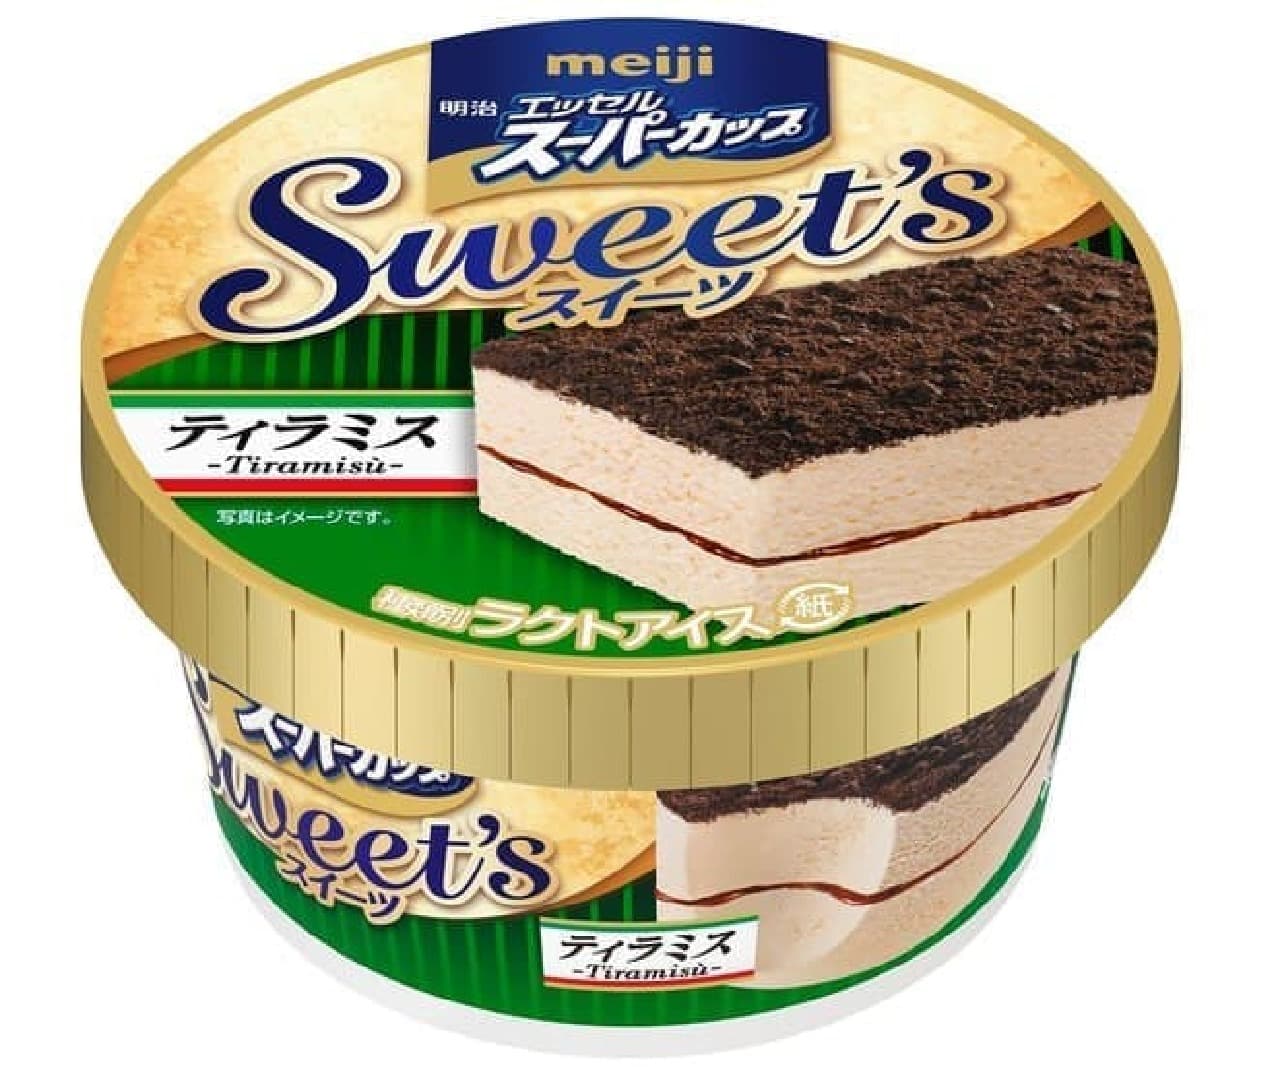 アイスの新商品「明治 エッセルスーパーカップ Sweet's ティラミス」